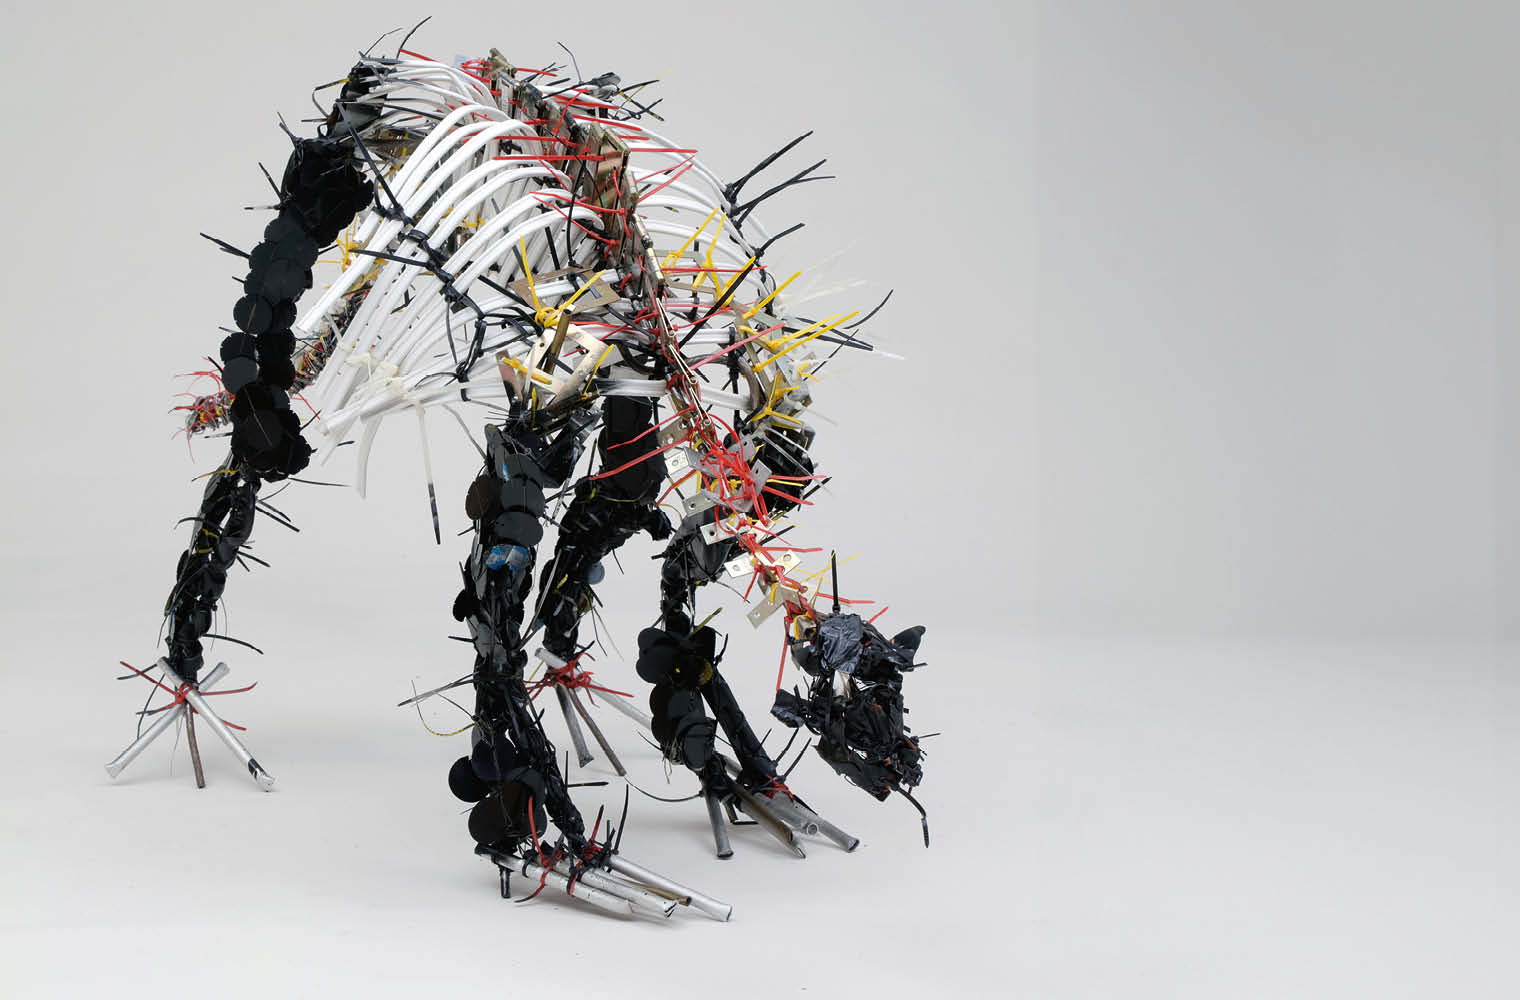 Skulptur eines Dinosauriers aus verschiedenen Materialien wie Kabel und Plastik in Schwarz, Weiß, Rot und Gelb. Die dynamische Haltung des Dinosauriers suggeriert Bewegung. Der neutrale Hintergrund betont die Details der komplexen Struktur.